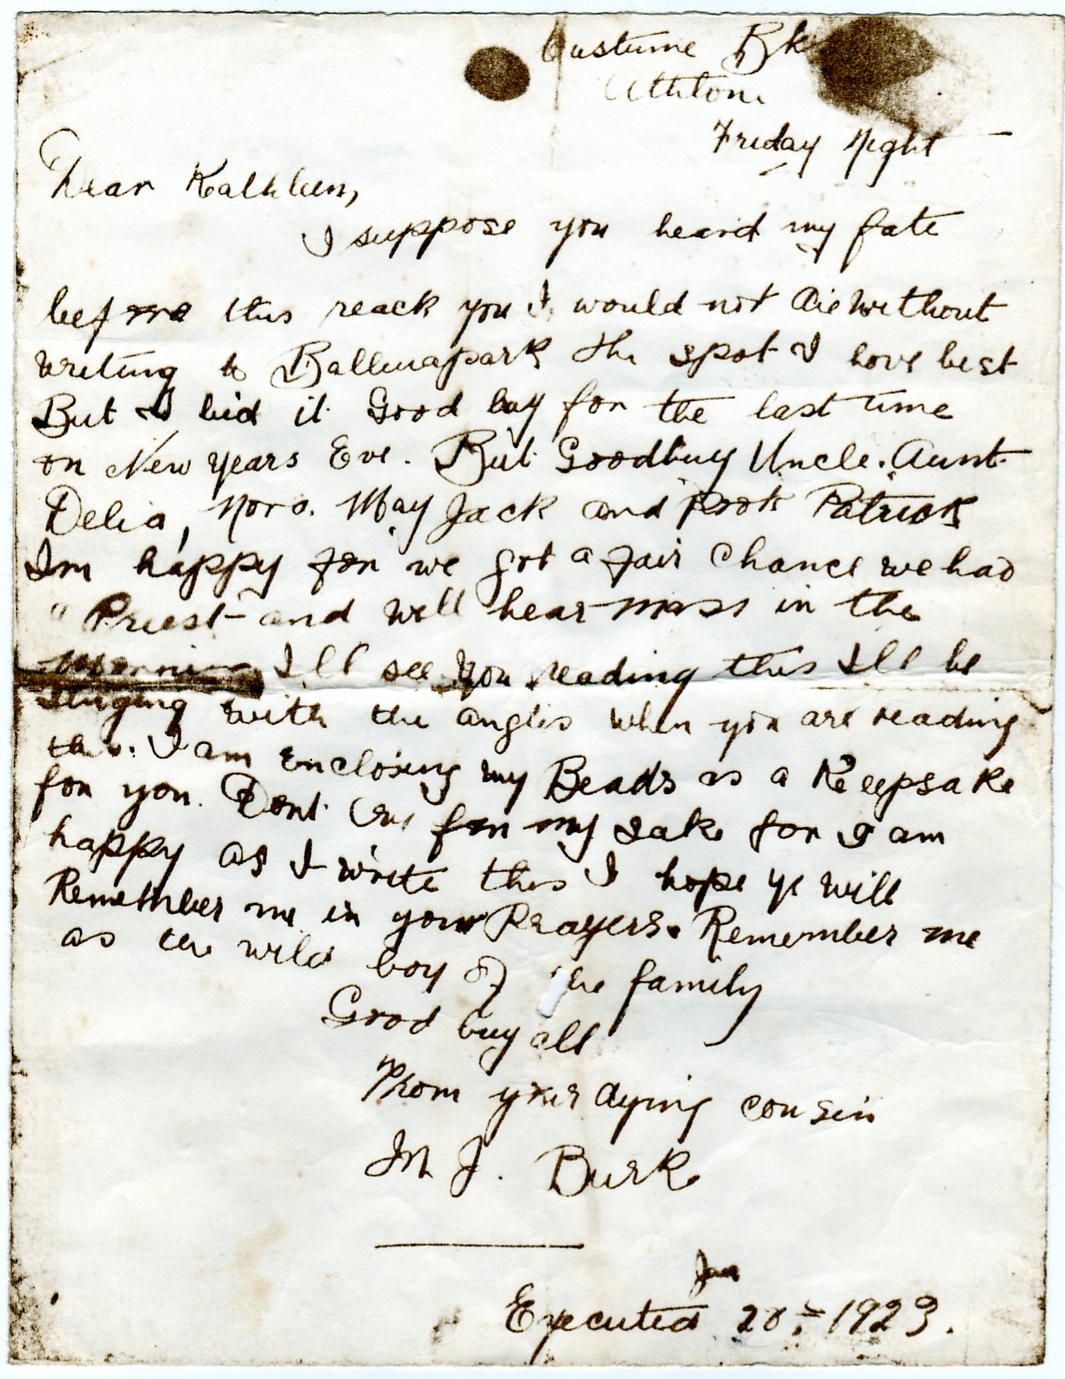 Martin Burke letter 